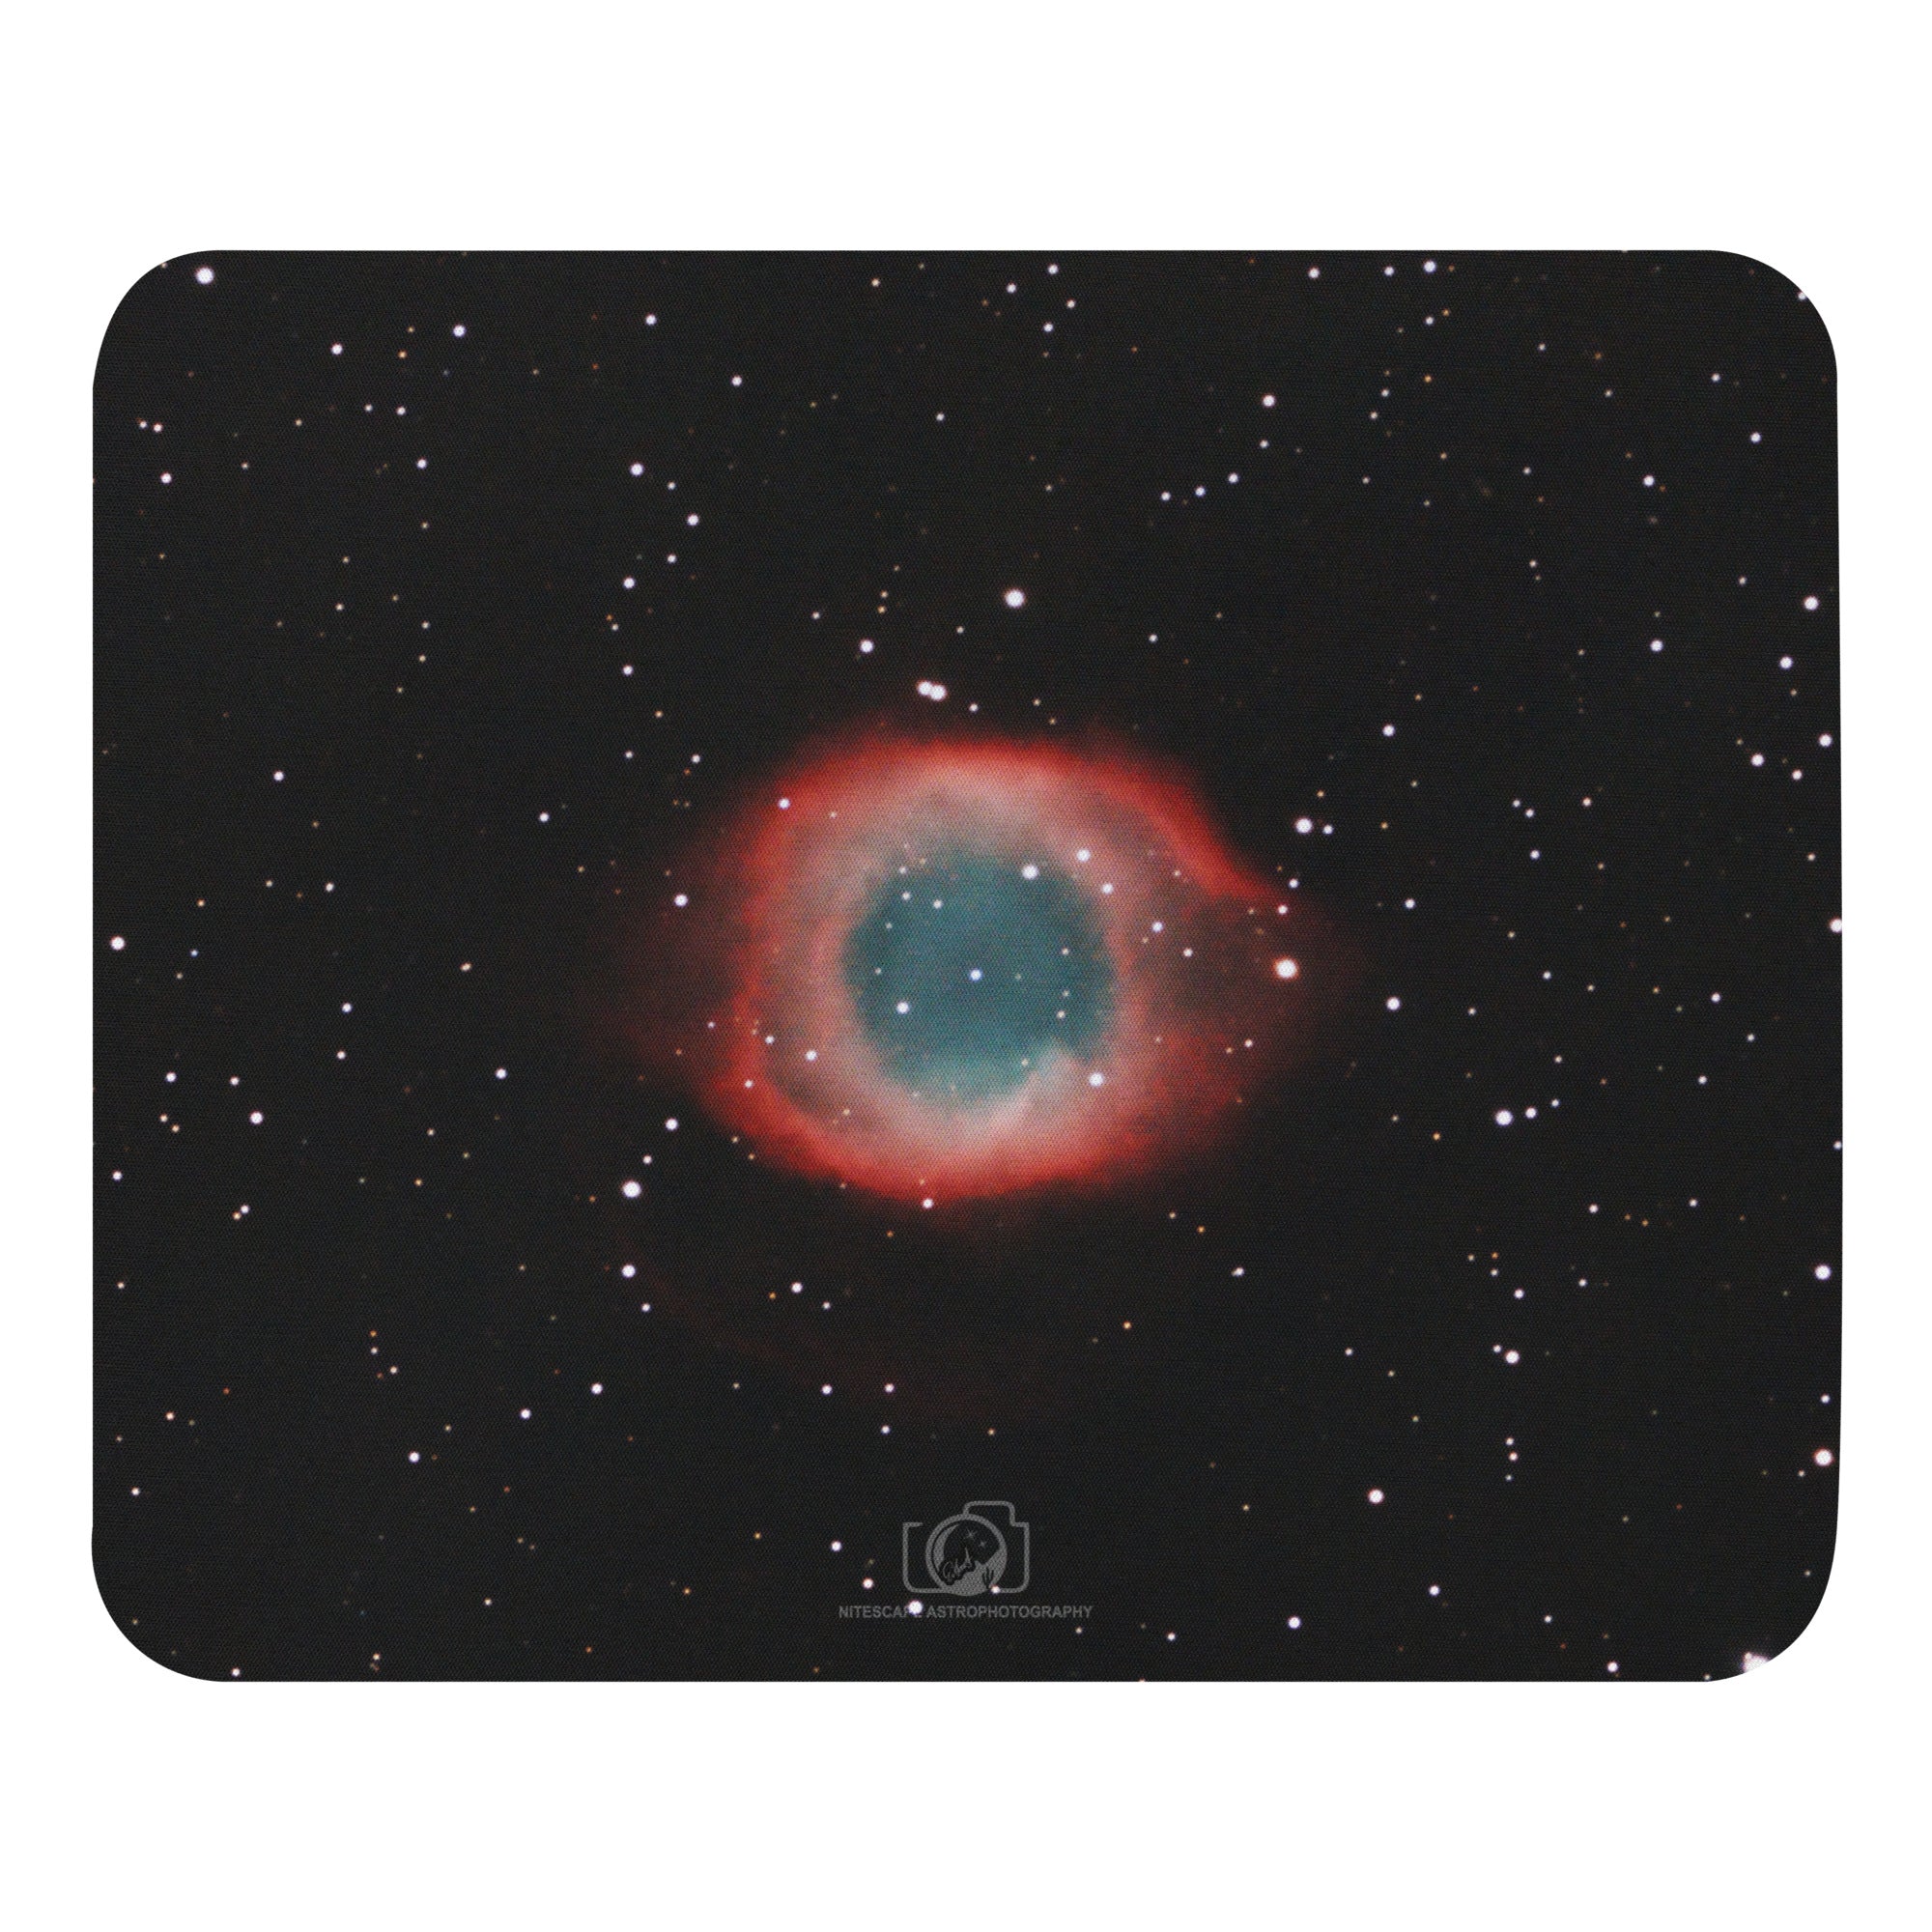 Mouse pad:  Helix (Eye of God) Nebula